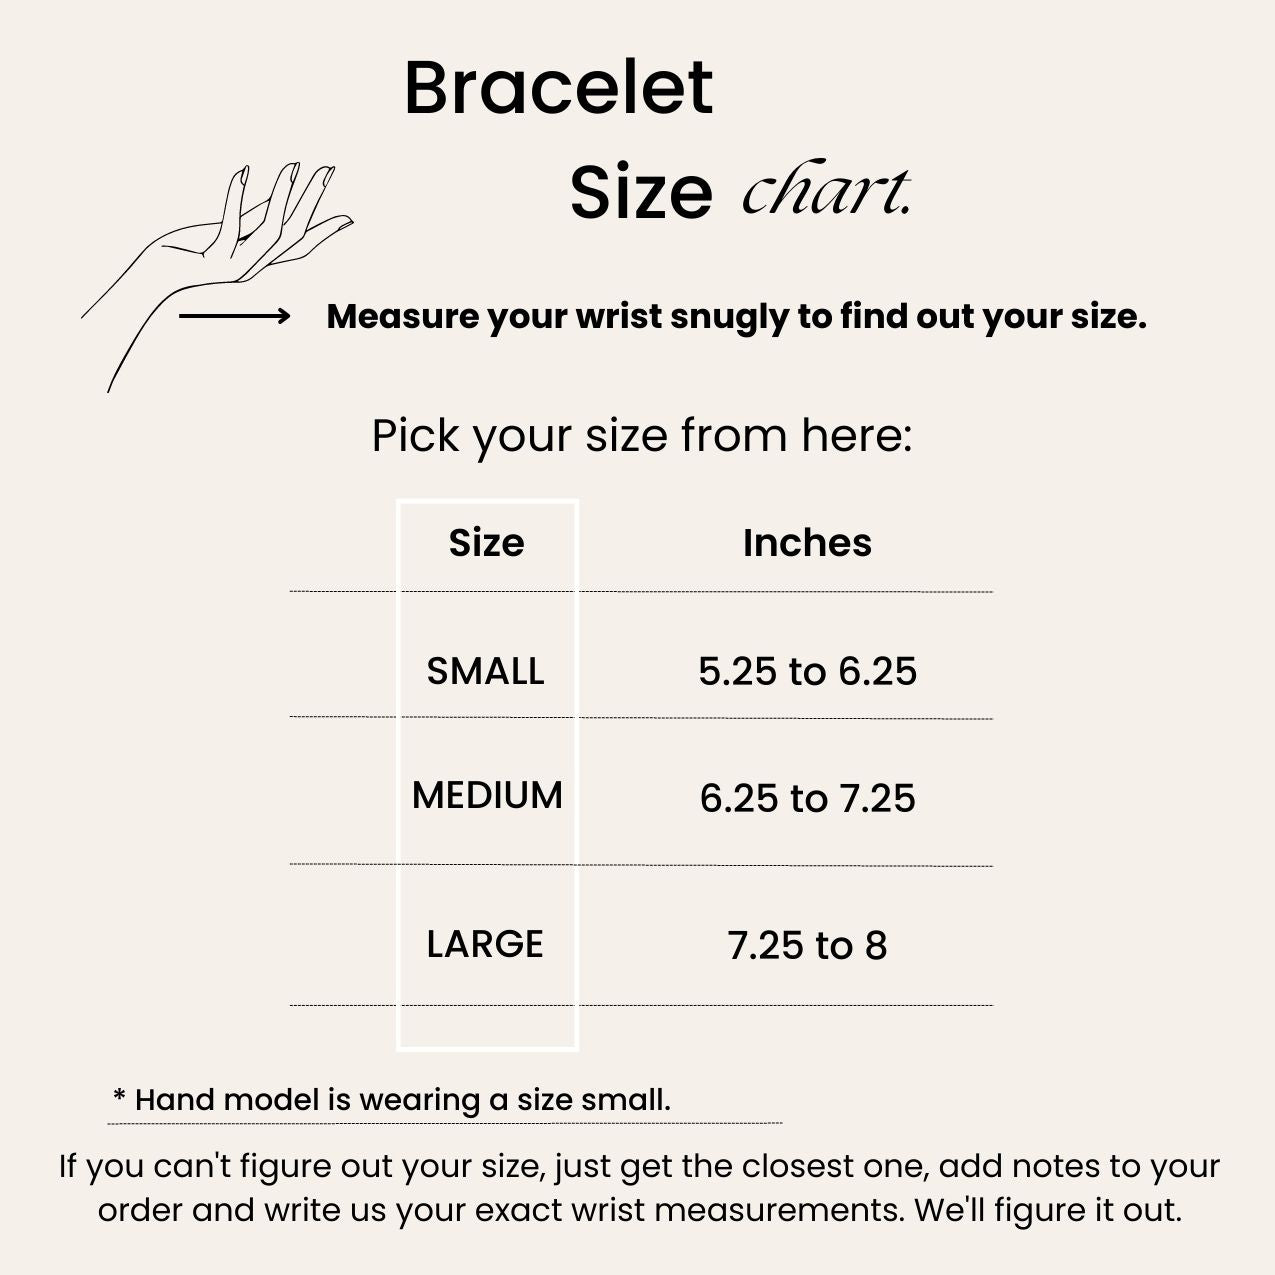 Bracelet size chart